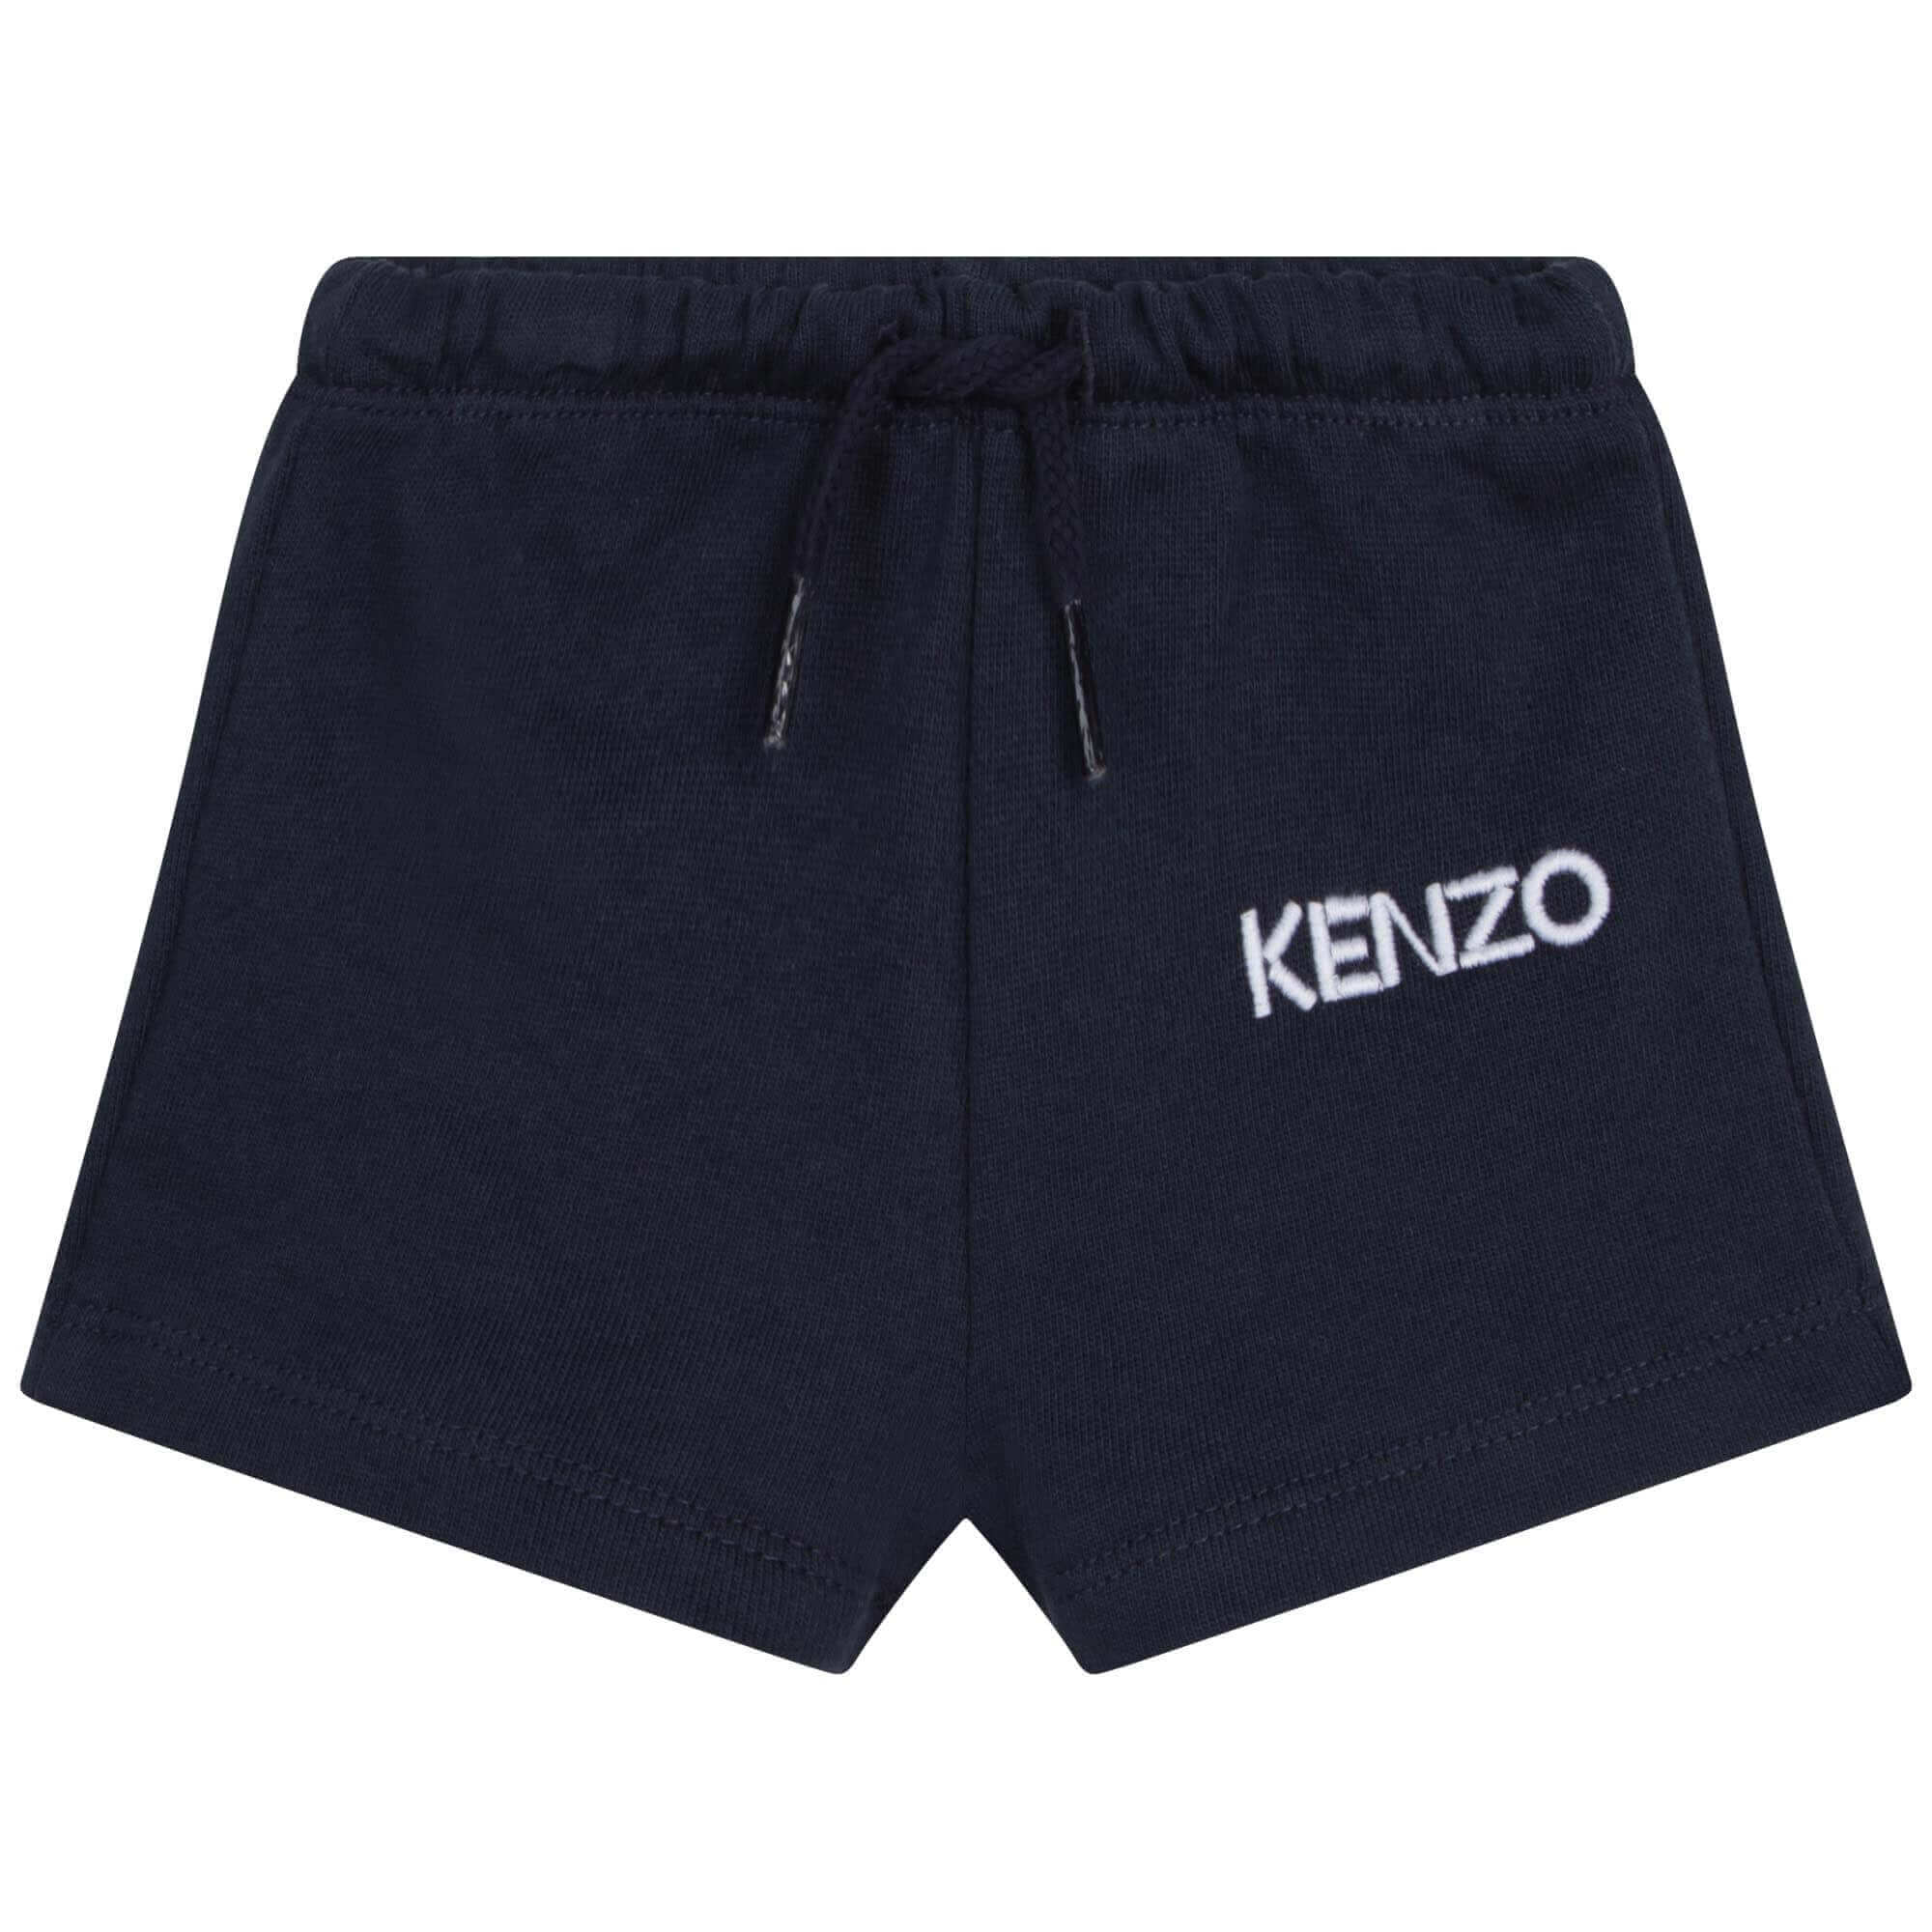 Kenzo Kids Baby Boys White And Blue Elephant Shorts Set